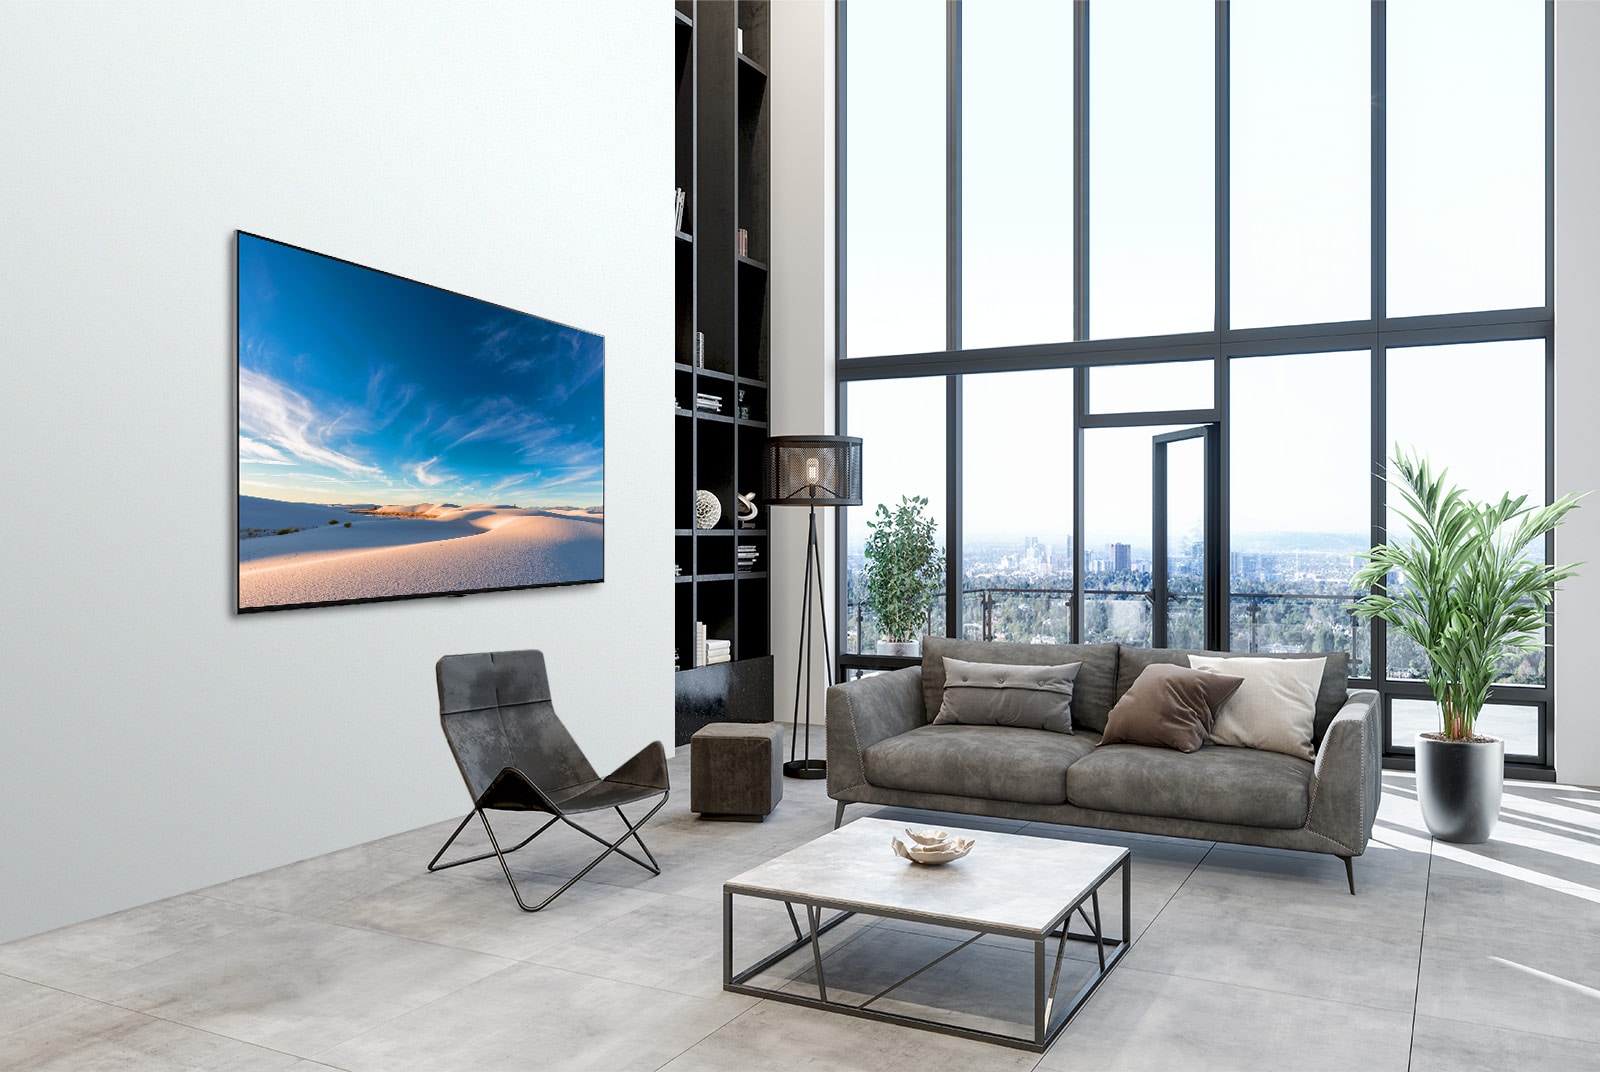 TV LG QNED montata contro una parete in un interno moderno.